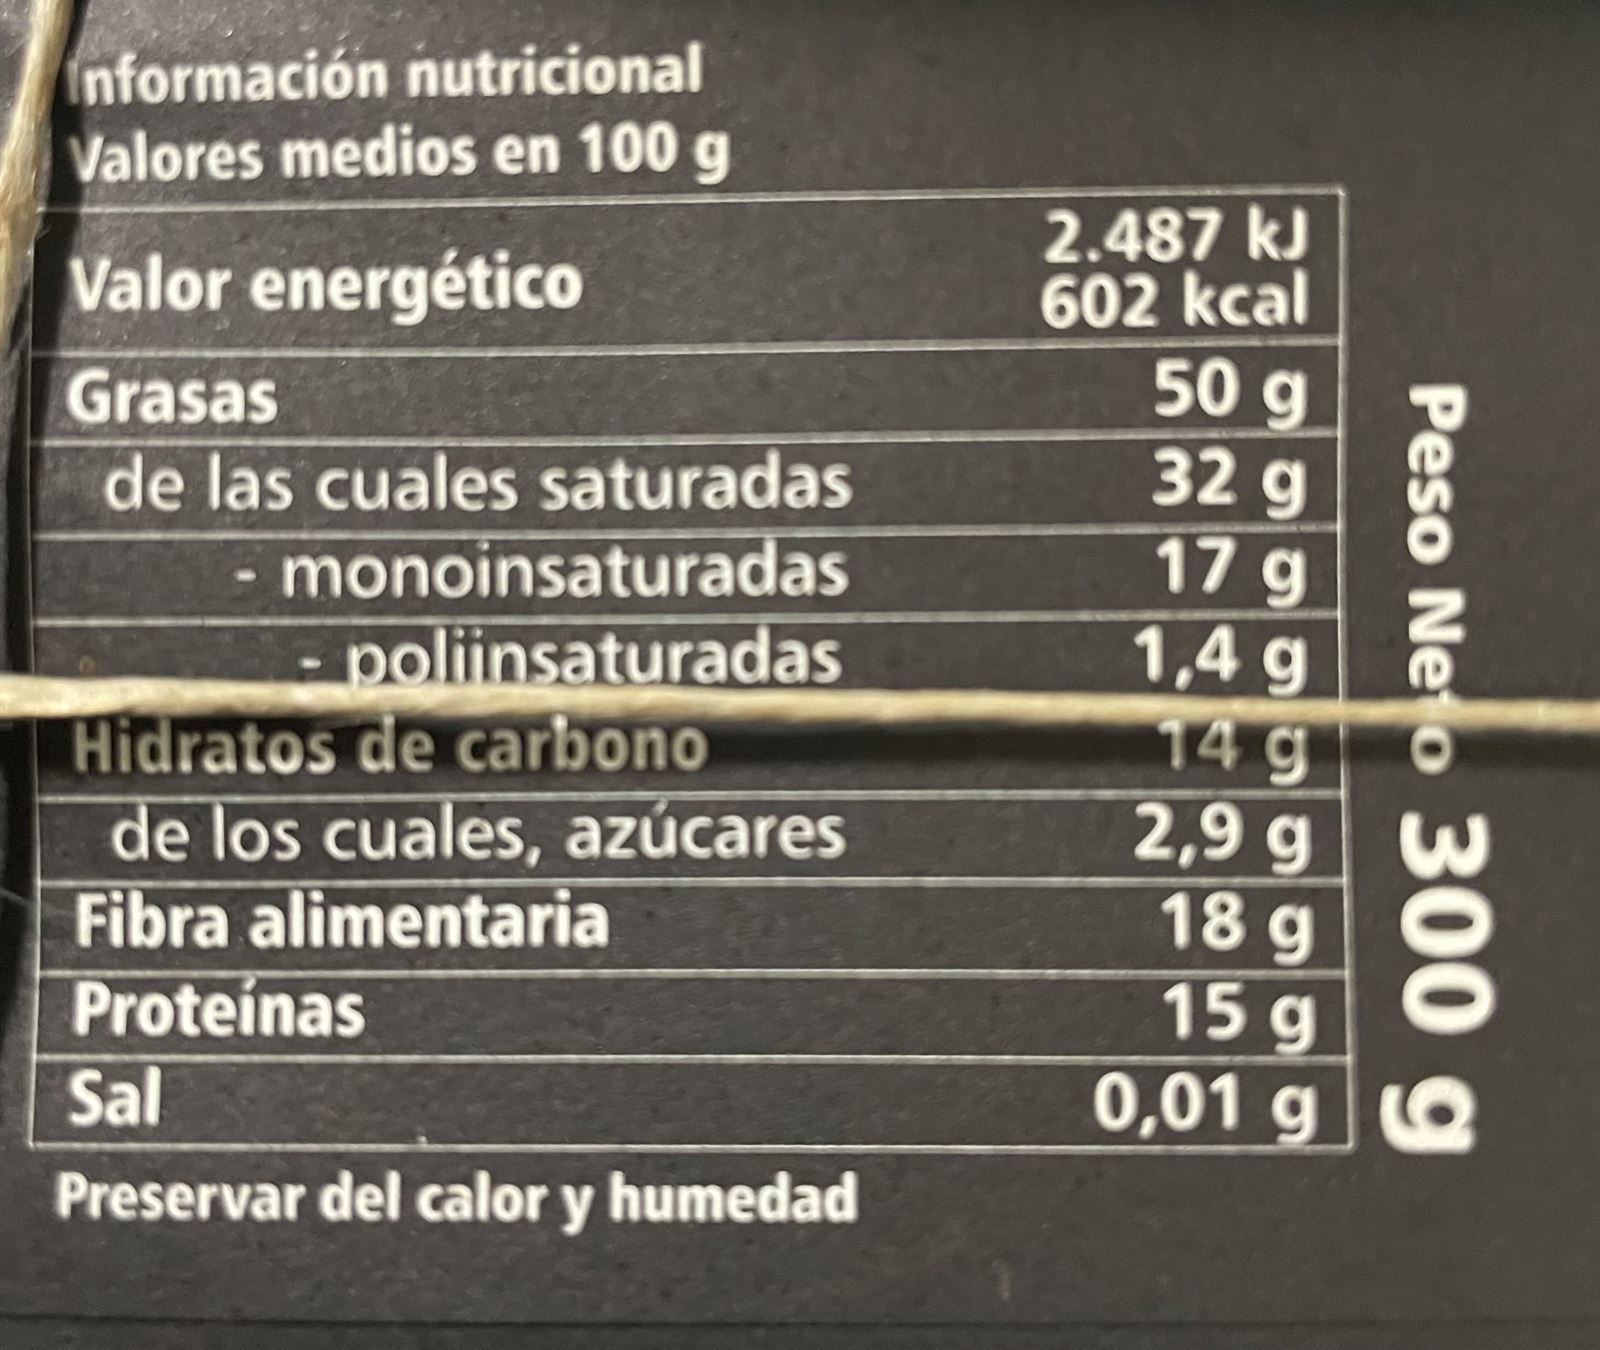 TABLETA CHOCOLATE 99% PAZO DE CORUXO 300grs - Imagen 2